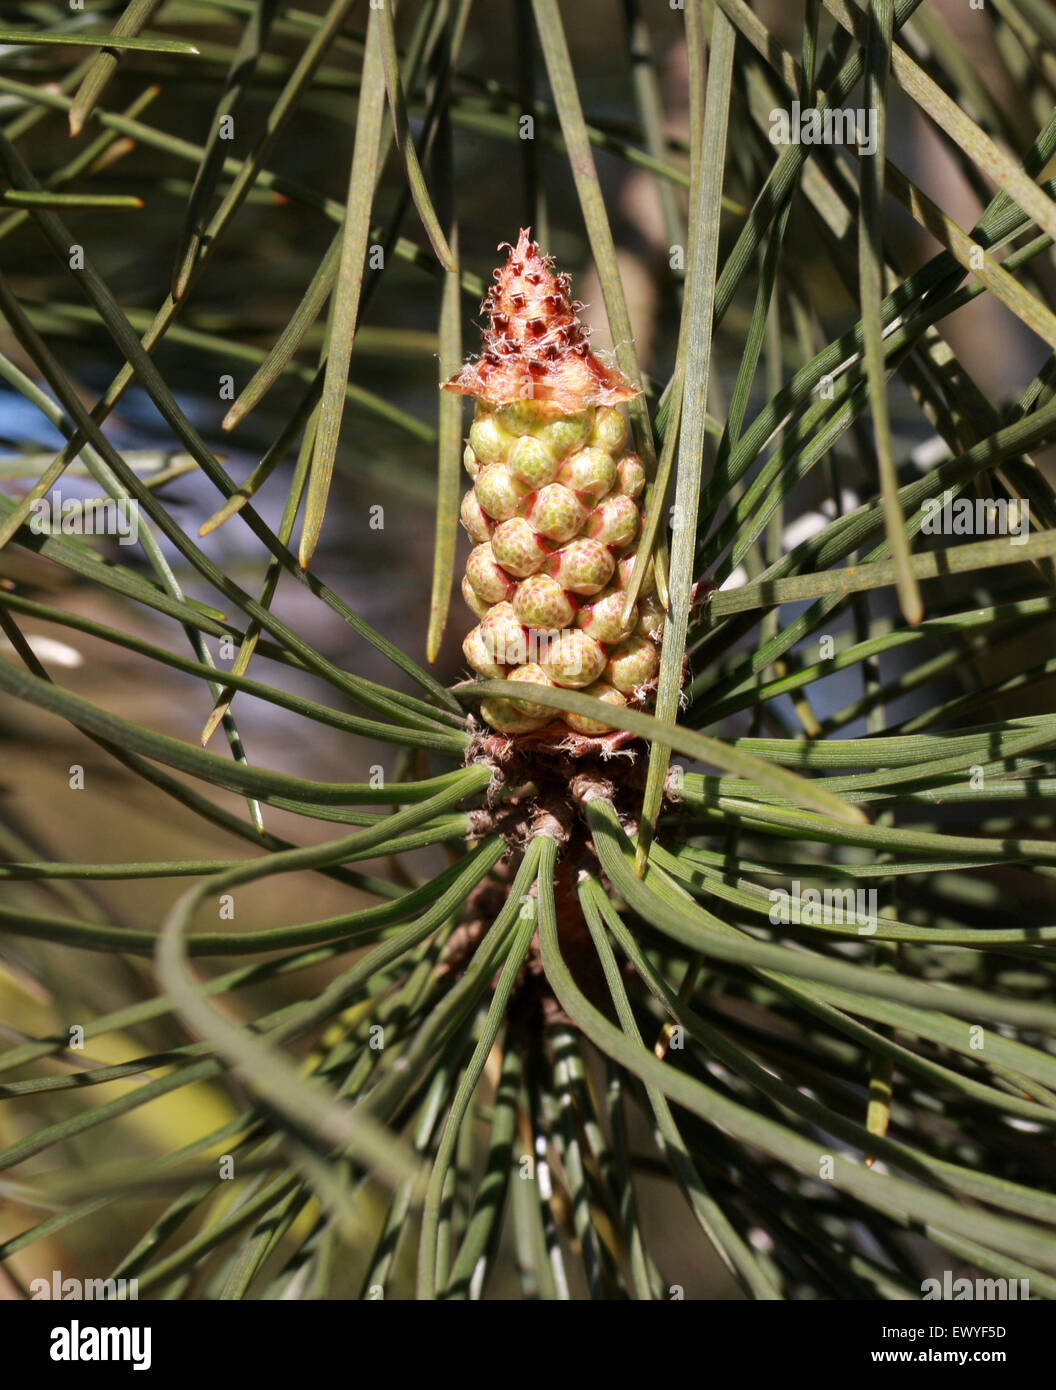 Pino marítimo, Pinus pinaster, Pinaceae. El sur y el Oeste de Europa y Norte de África. Foto de stock